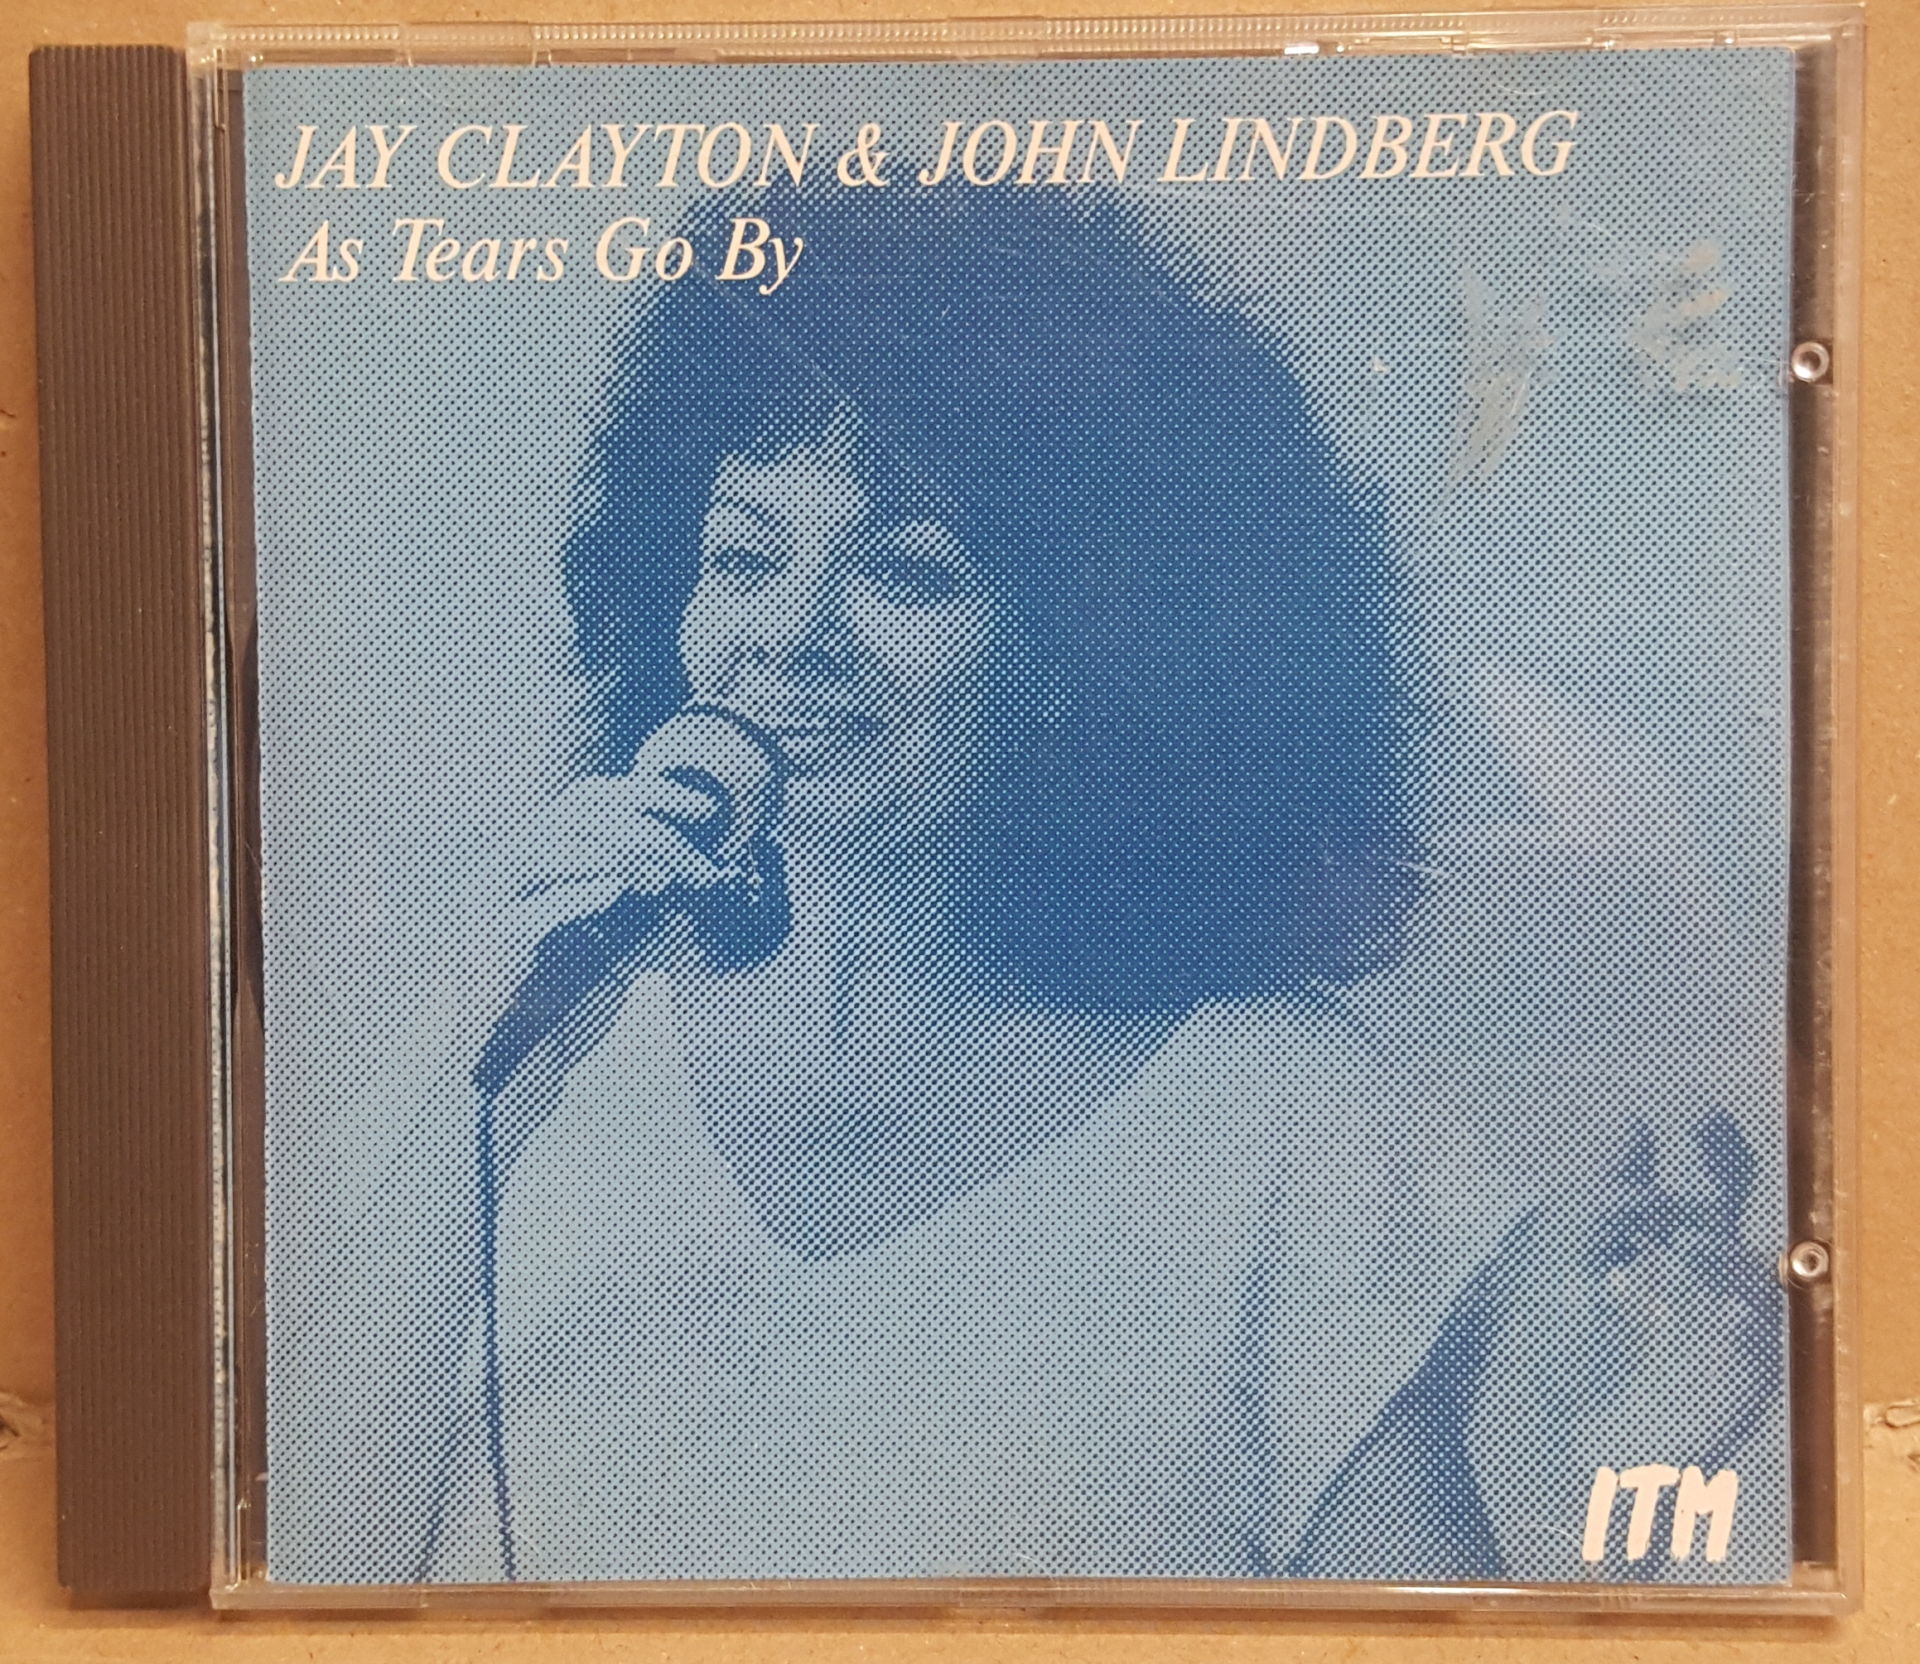 JAY CLAYTON & JOHN LINDBERG - AS TEARS GO BY (1988) - CD 2.EL